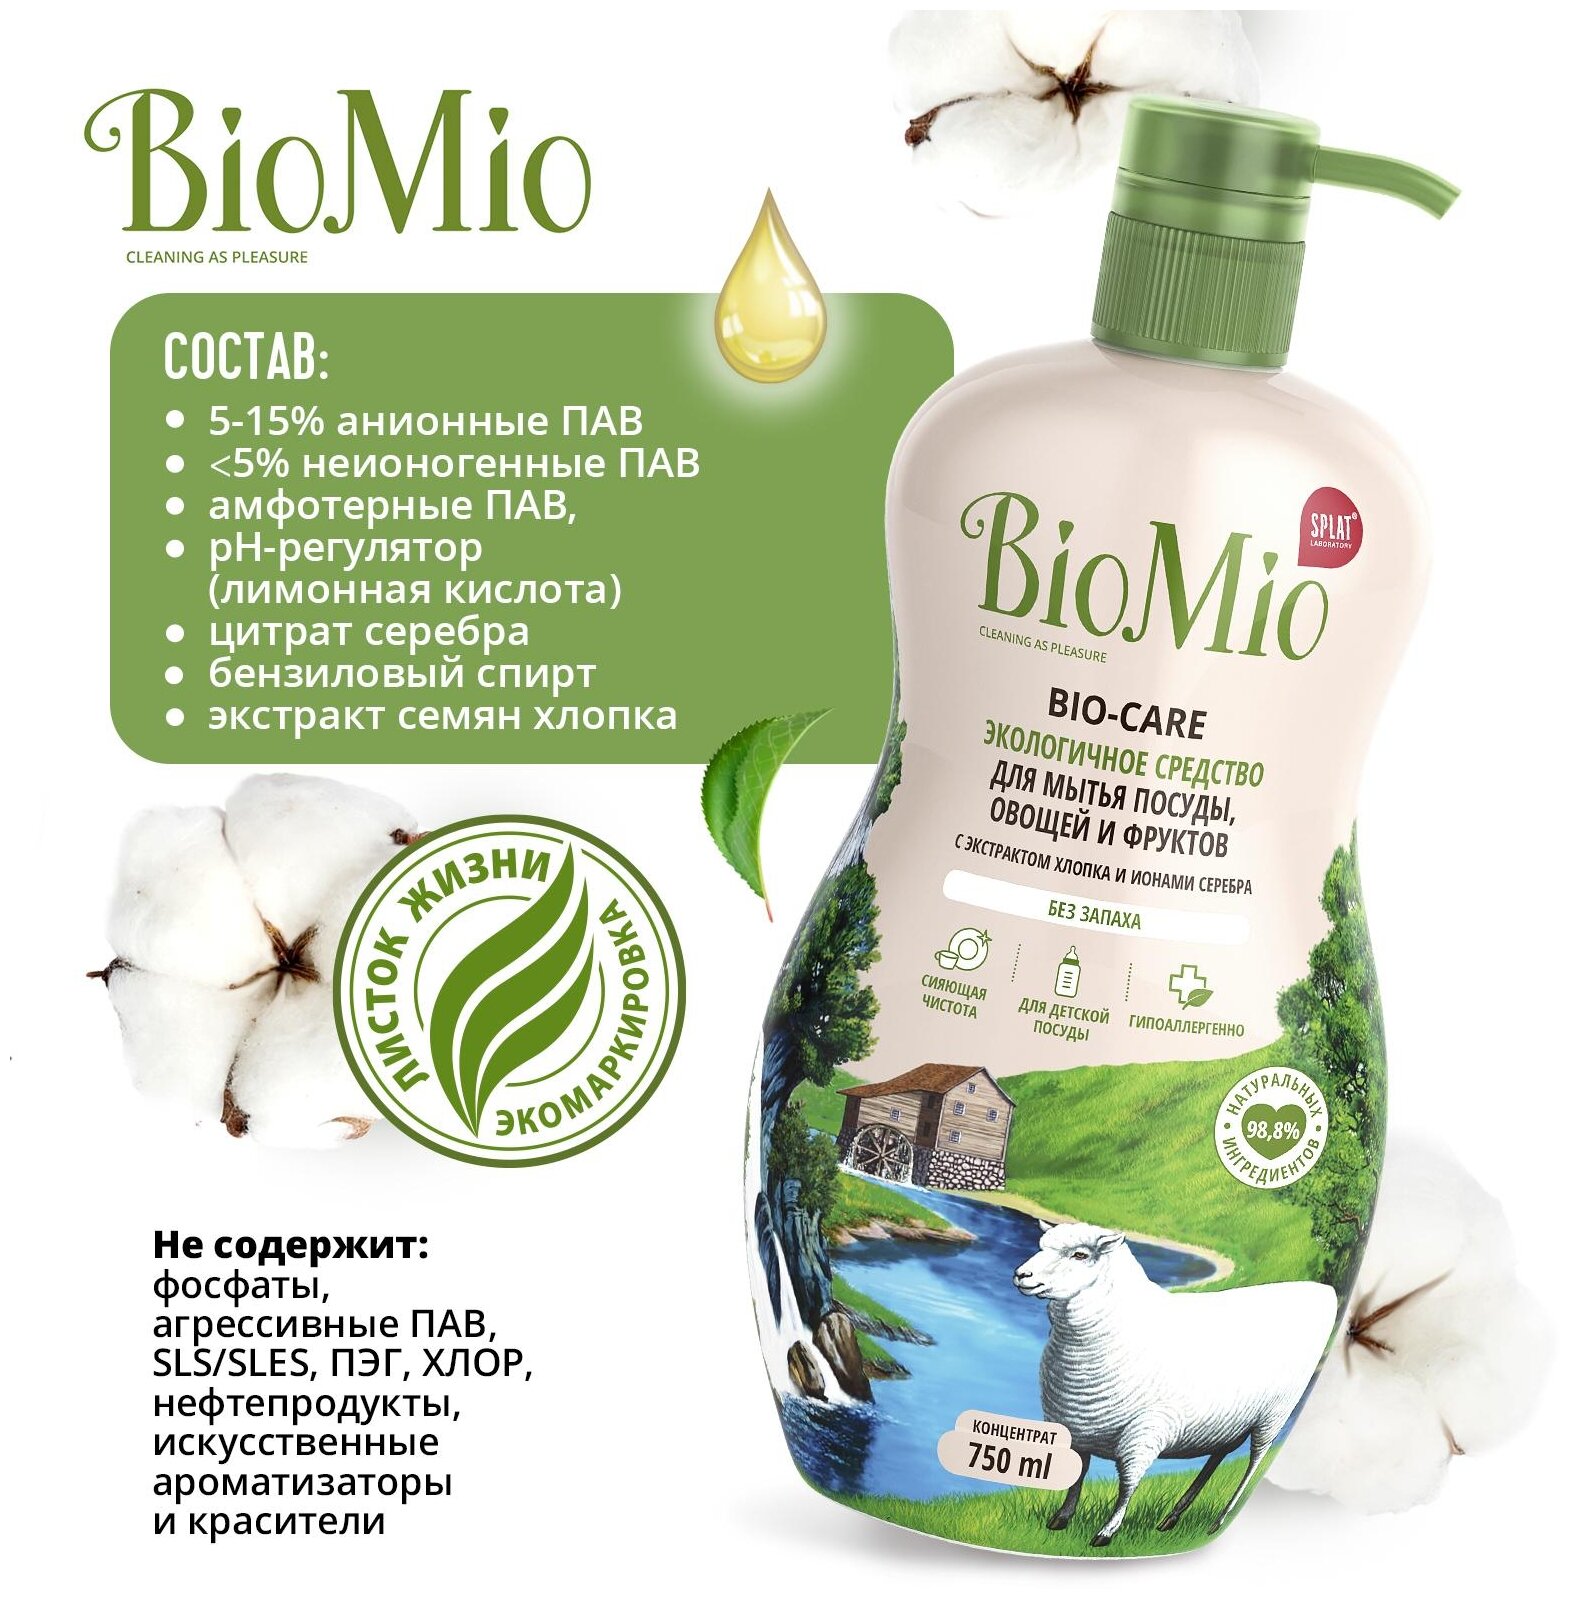 Средство BioMio, Bio-Care д/мытья посуды, овощей и фруктов, концентрат, без запаха 450 мл - фото №2